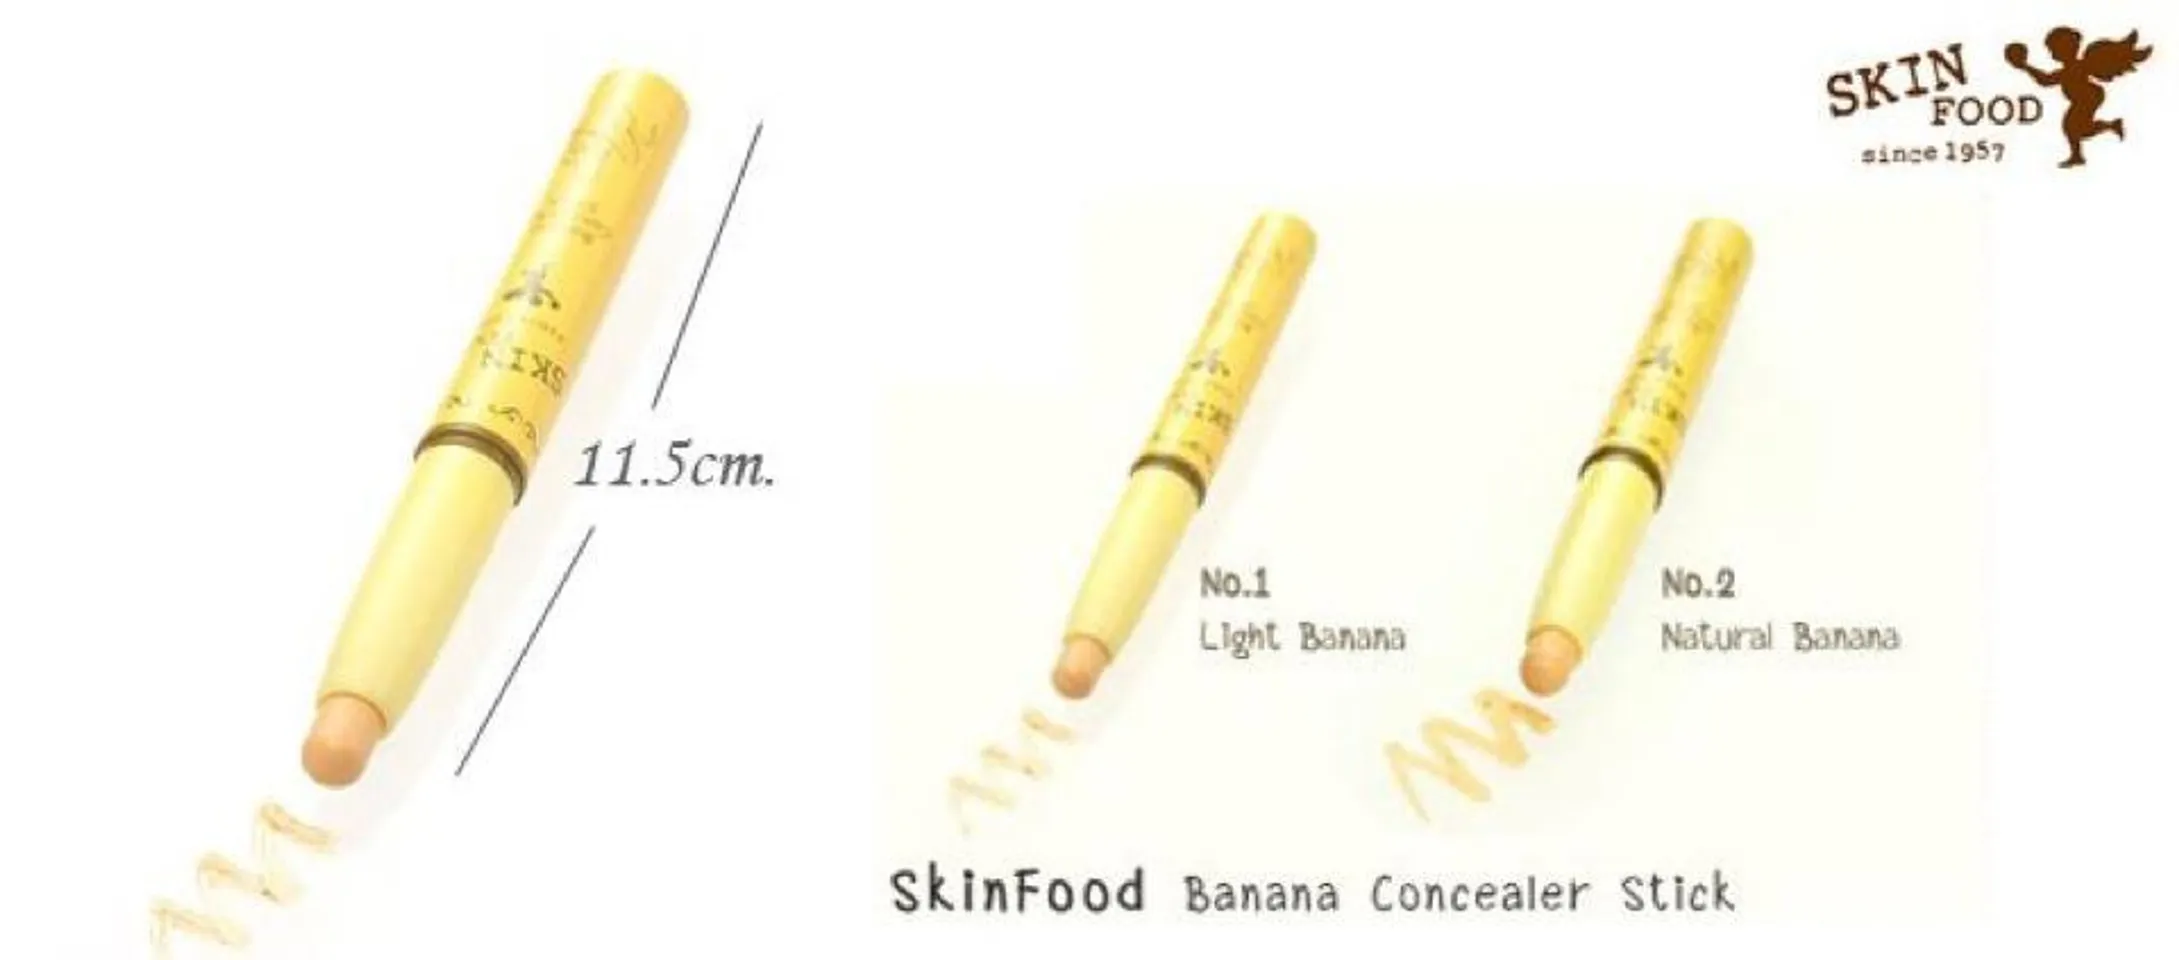 Skinfood Banana Concealer Stick có 2 tông màu cho bạn lựa chọn